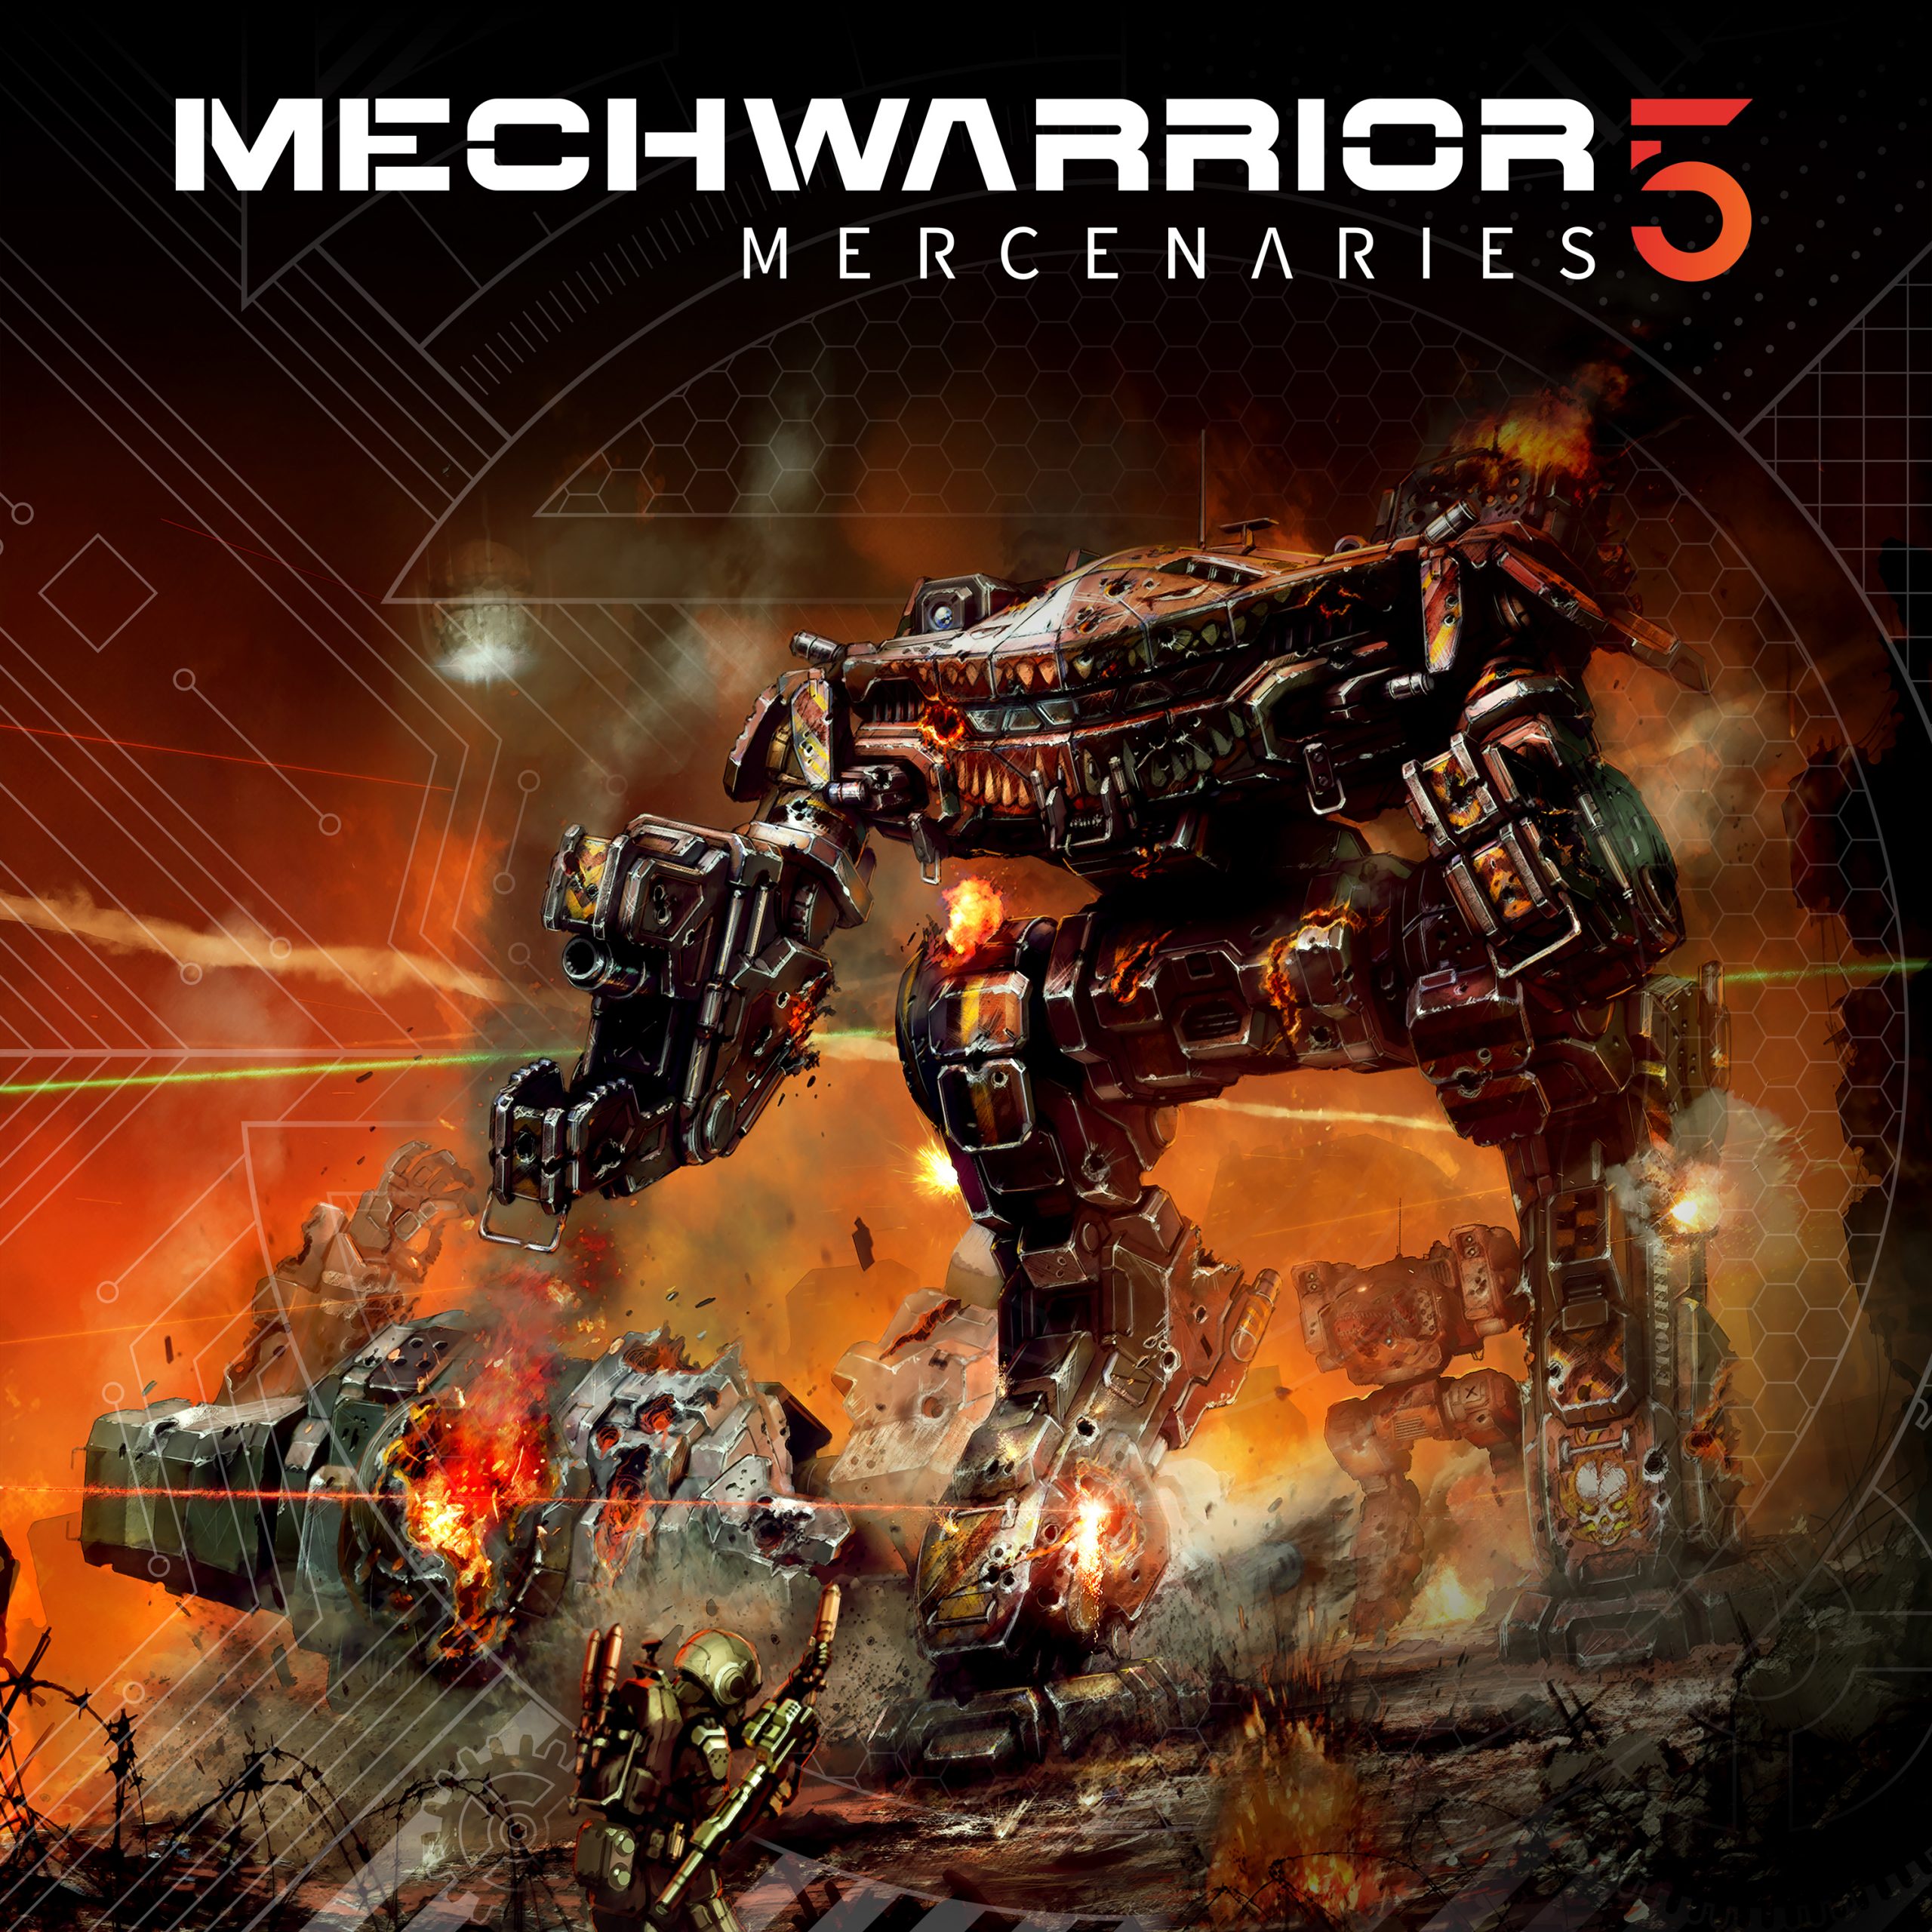 Mechwarrior 5: Mercenaries